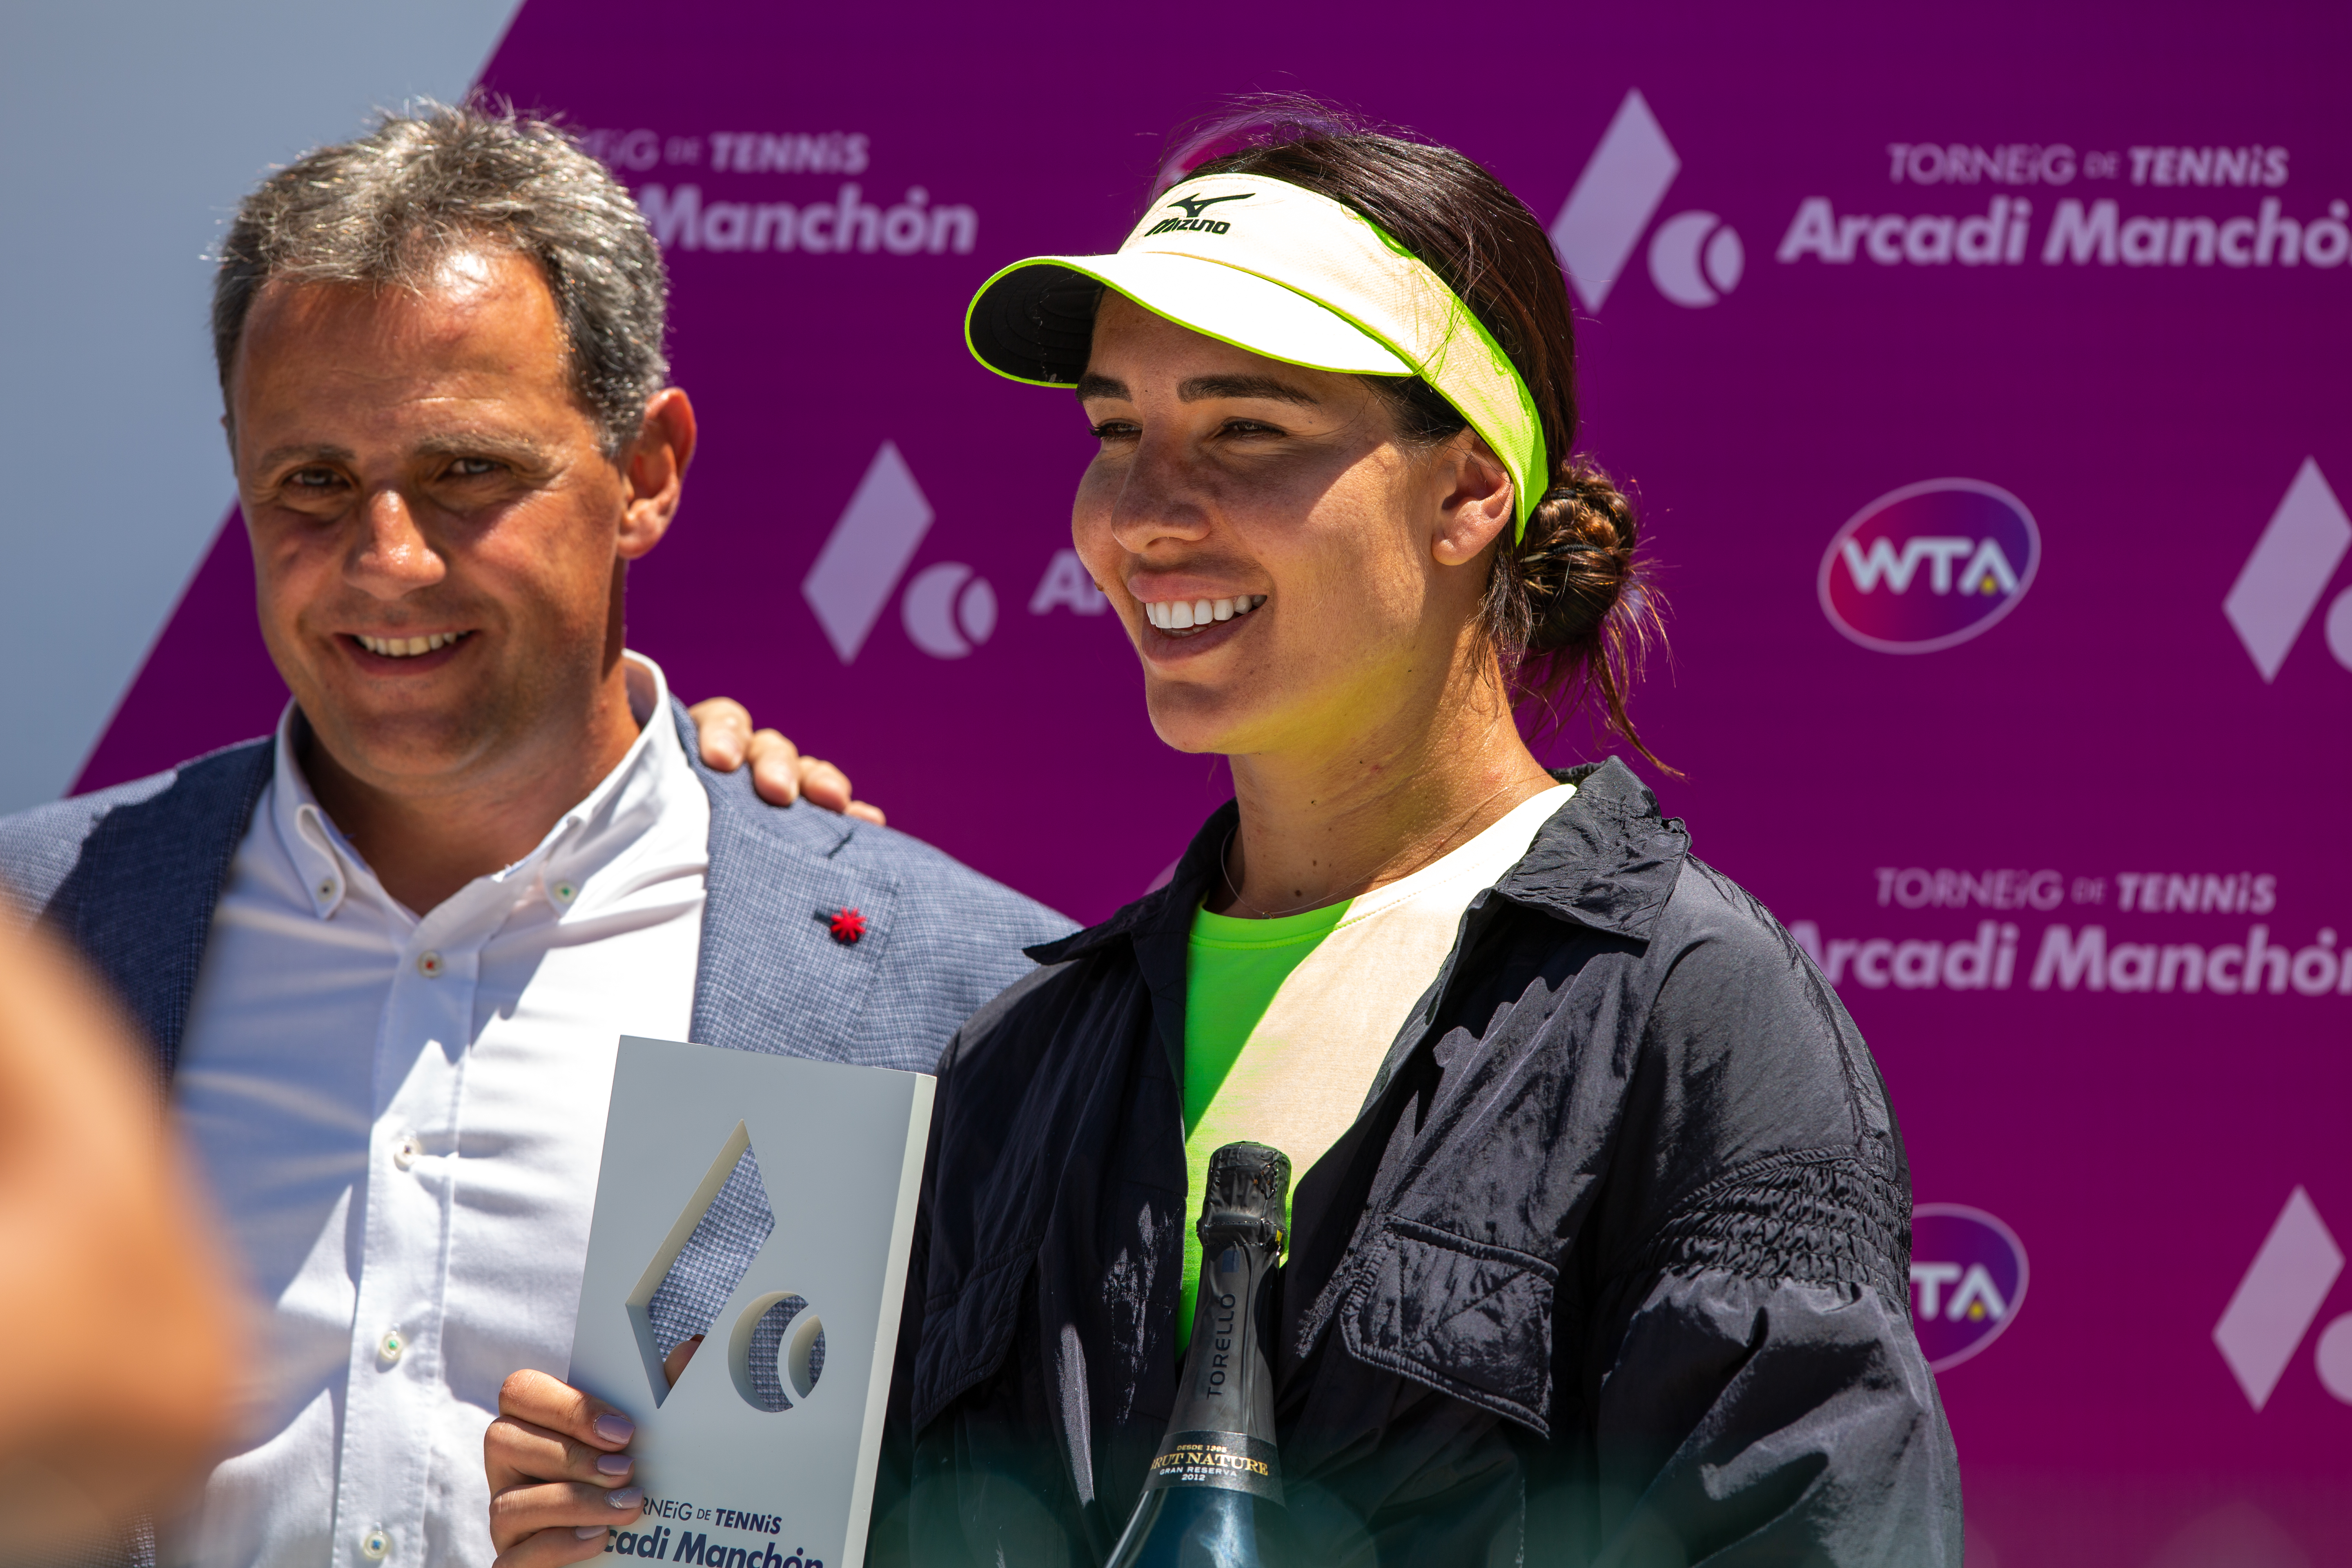 Campeona del Torneig ITF 25.000$ Arcadi Manchon, puntuable per la WTA.